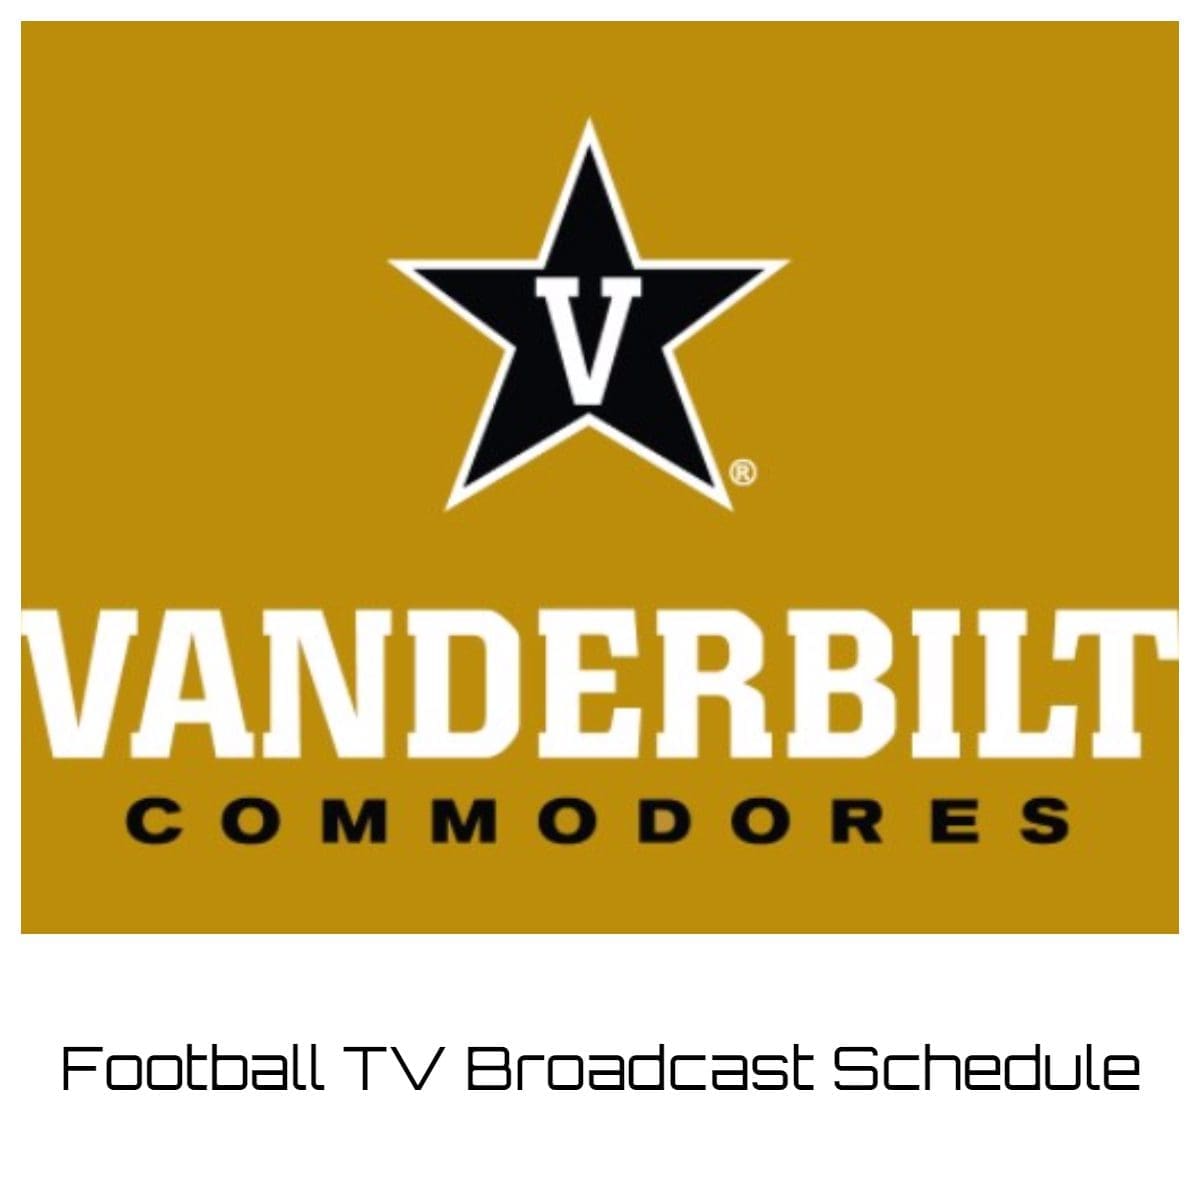 Vanderbilt Commodores Football TV Broadcast Schedule